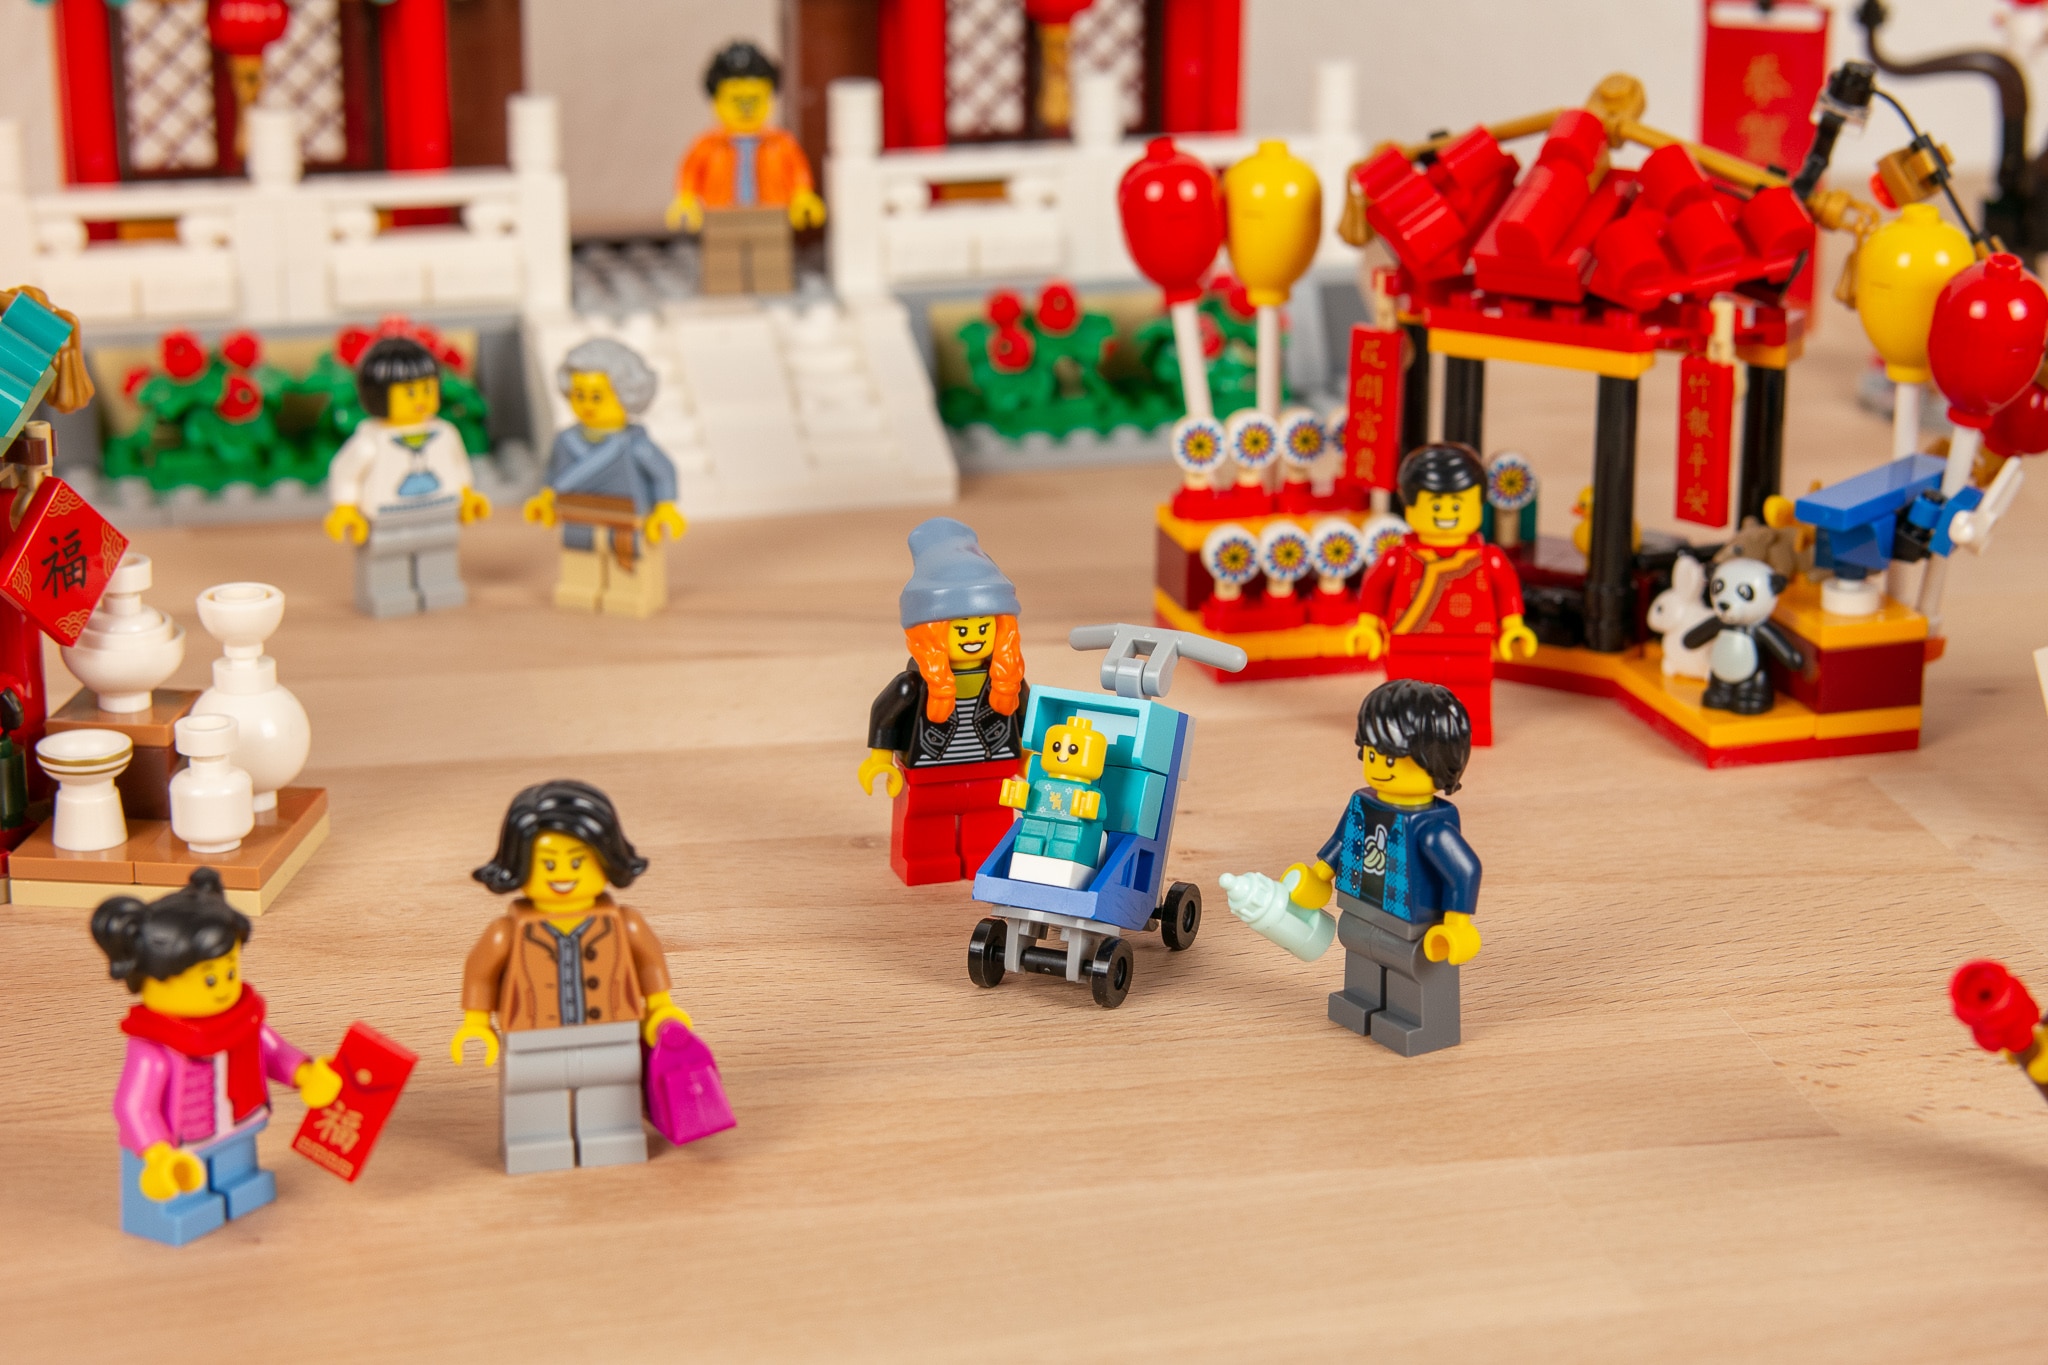 LEGO 80105 Tempelmarkt Zum Chinesischen Neujahrsfest Review (39)